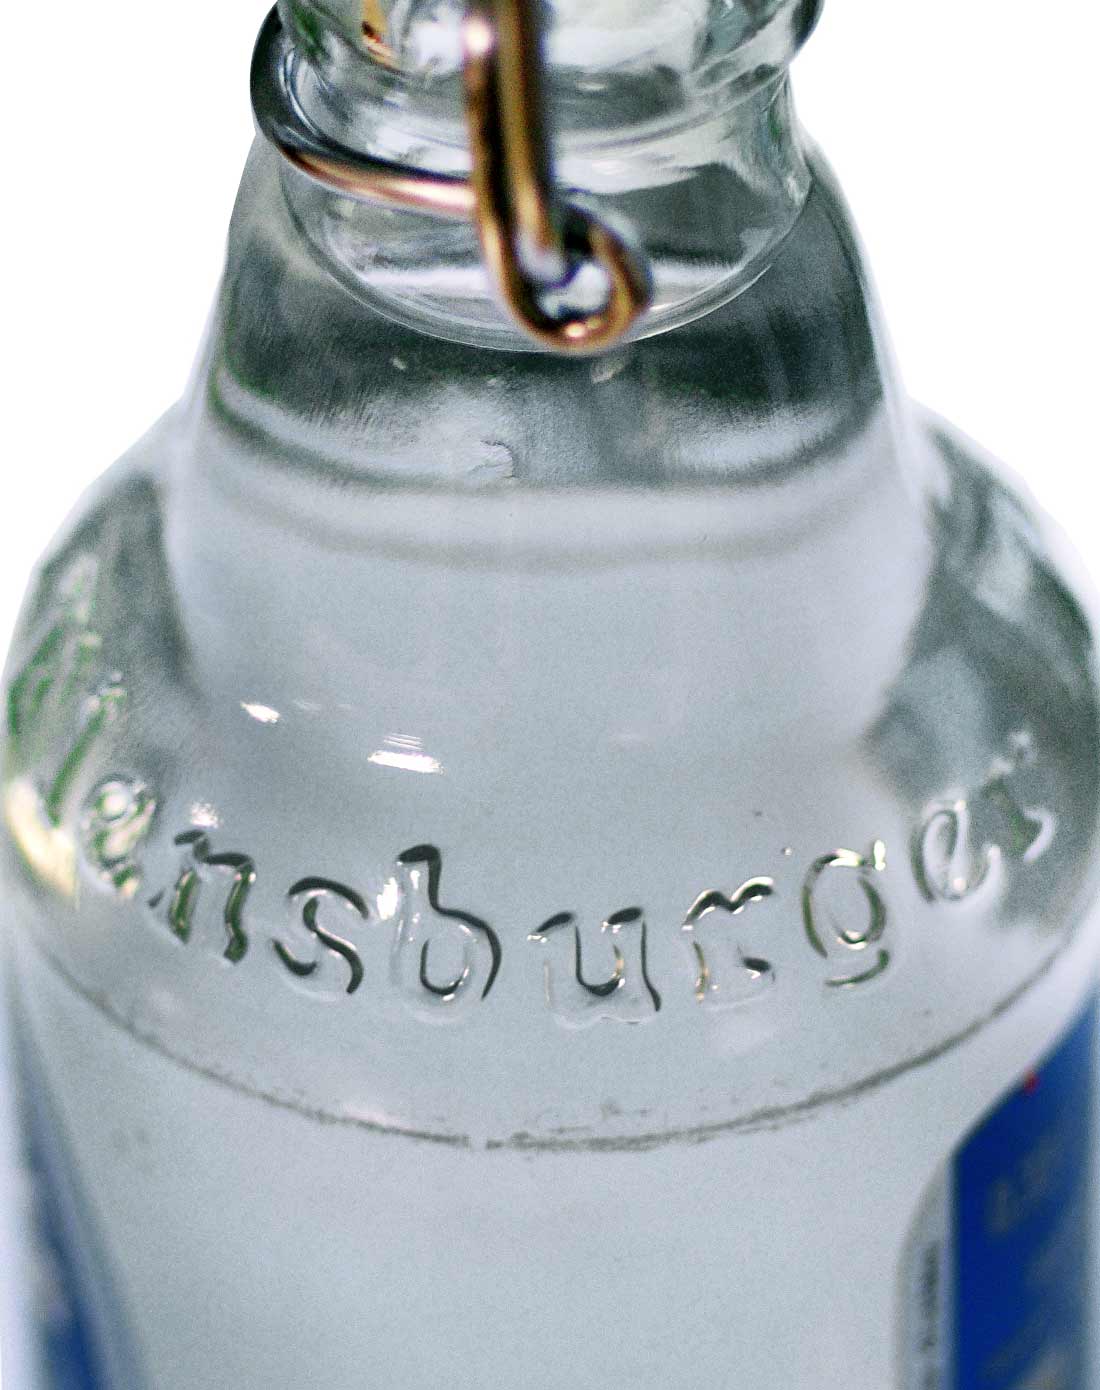 弗伦斯堡含气包装饮用水330ml瓶装